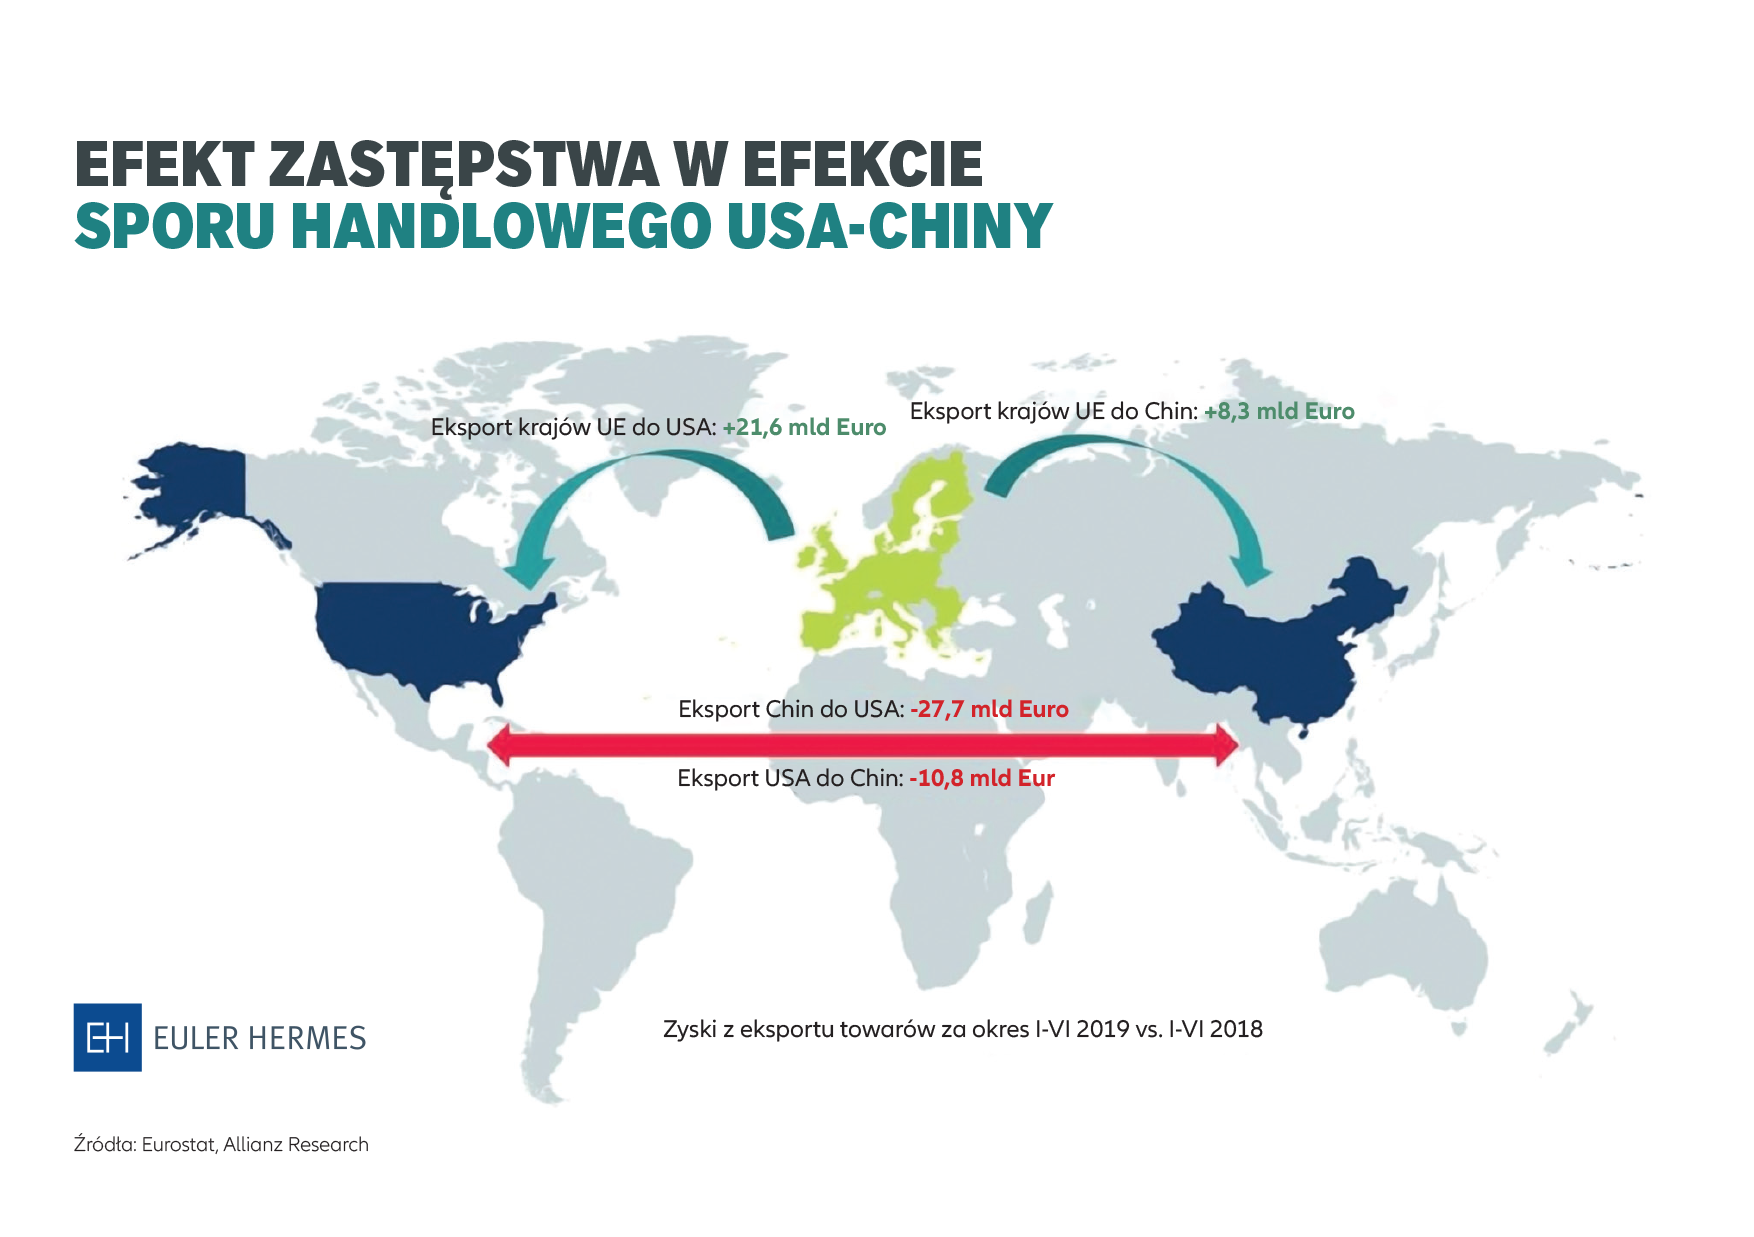 Polska zyskuje na sporze handlowym USA-Chiny